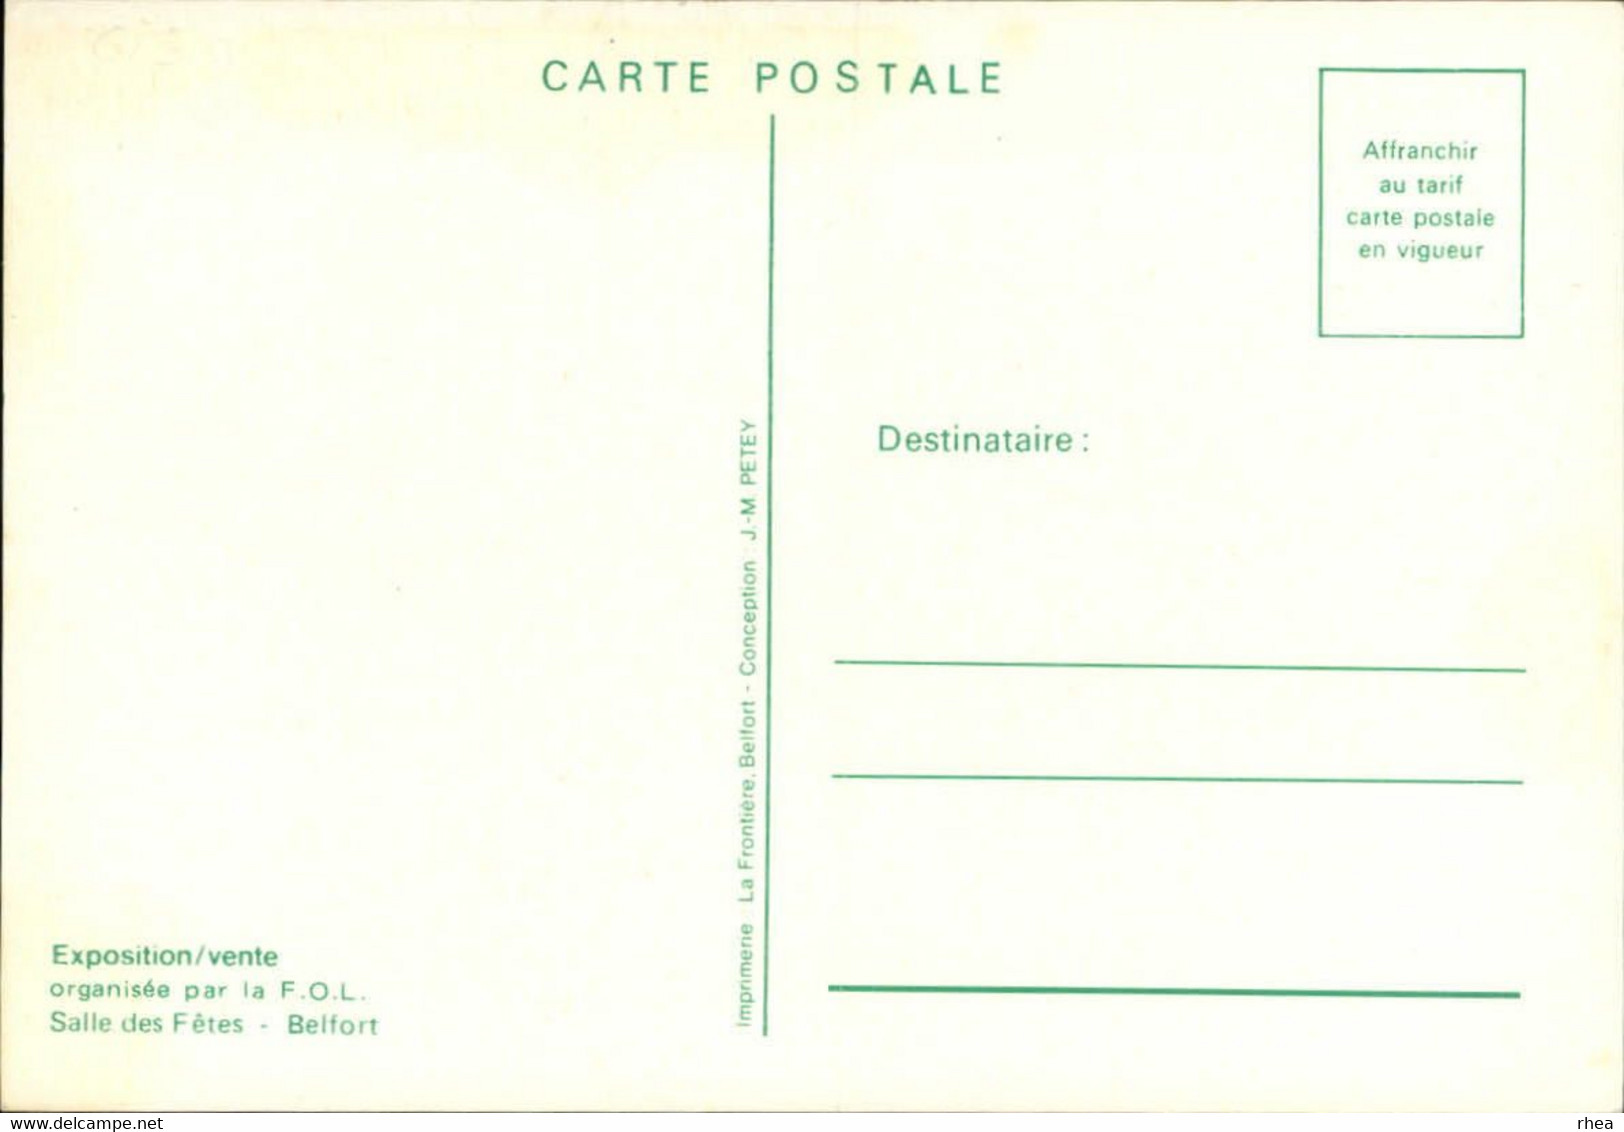 SALONS DE COLLECTIONS - Salon De Cartes Postales - 90 BELFORT - 1979 - Bourses & Salons De Collections